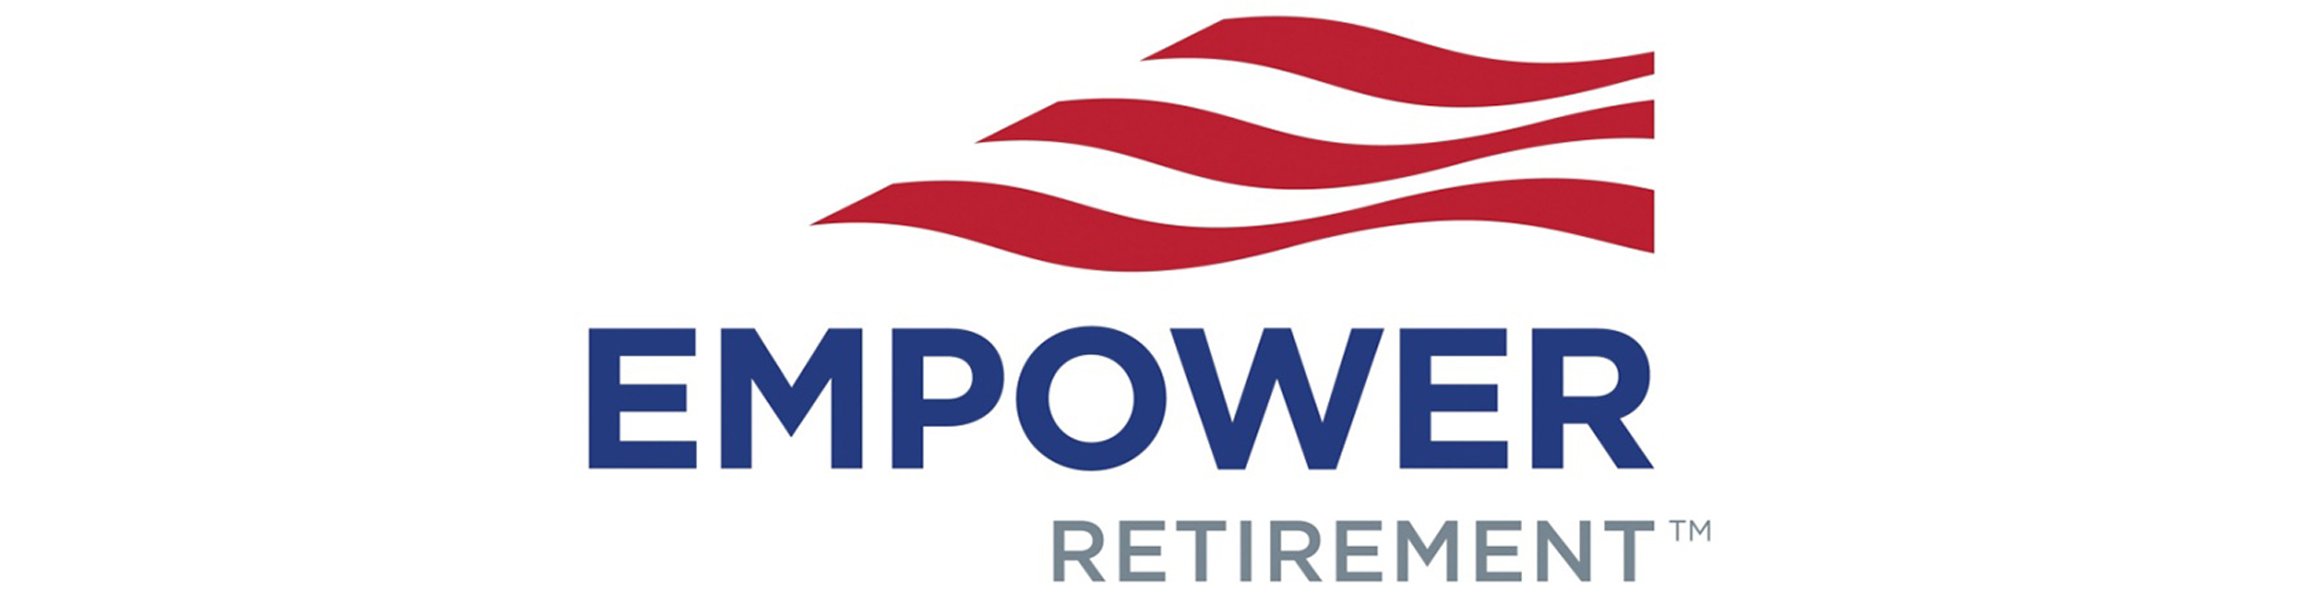 empower-retirement